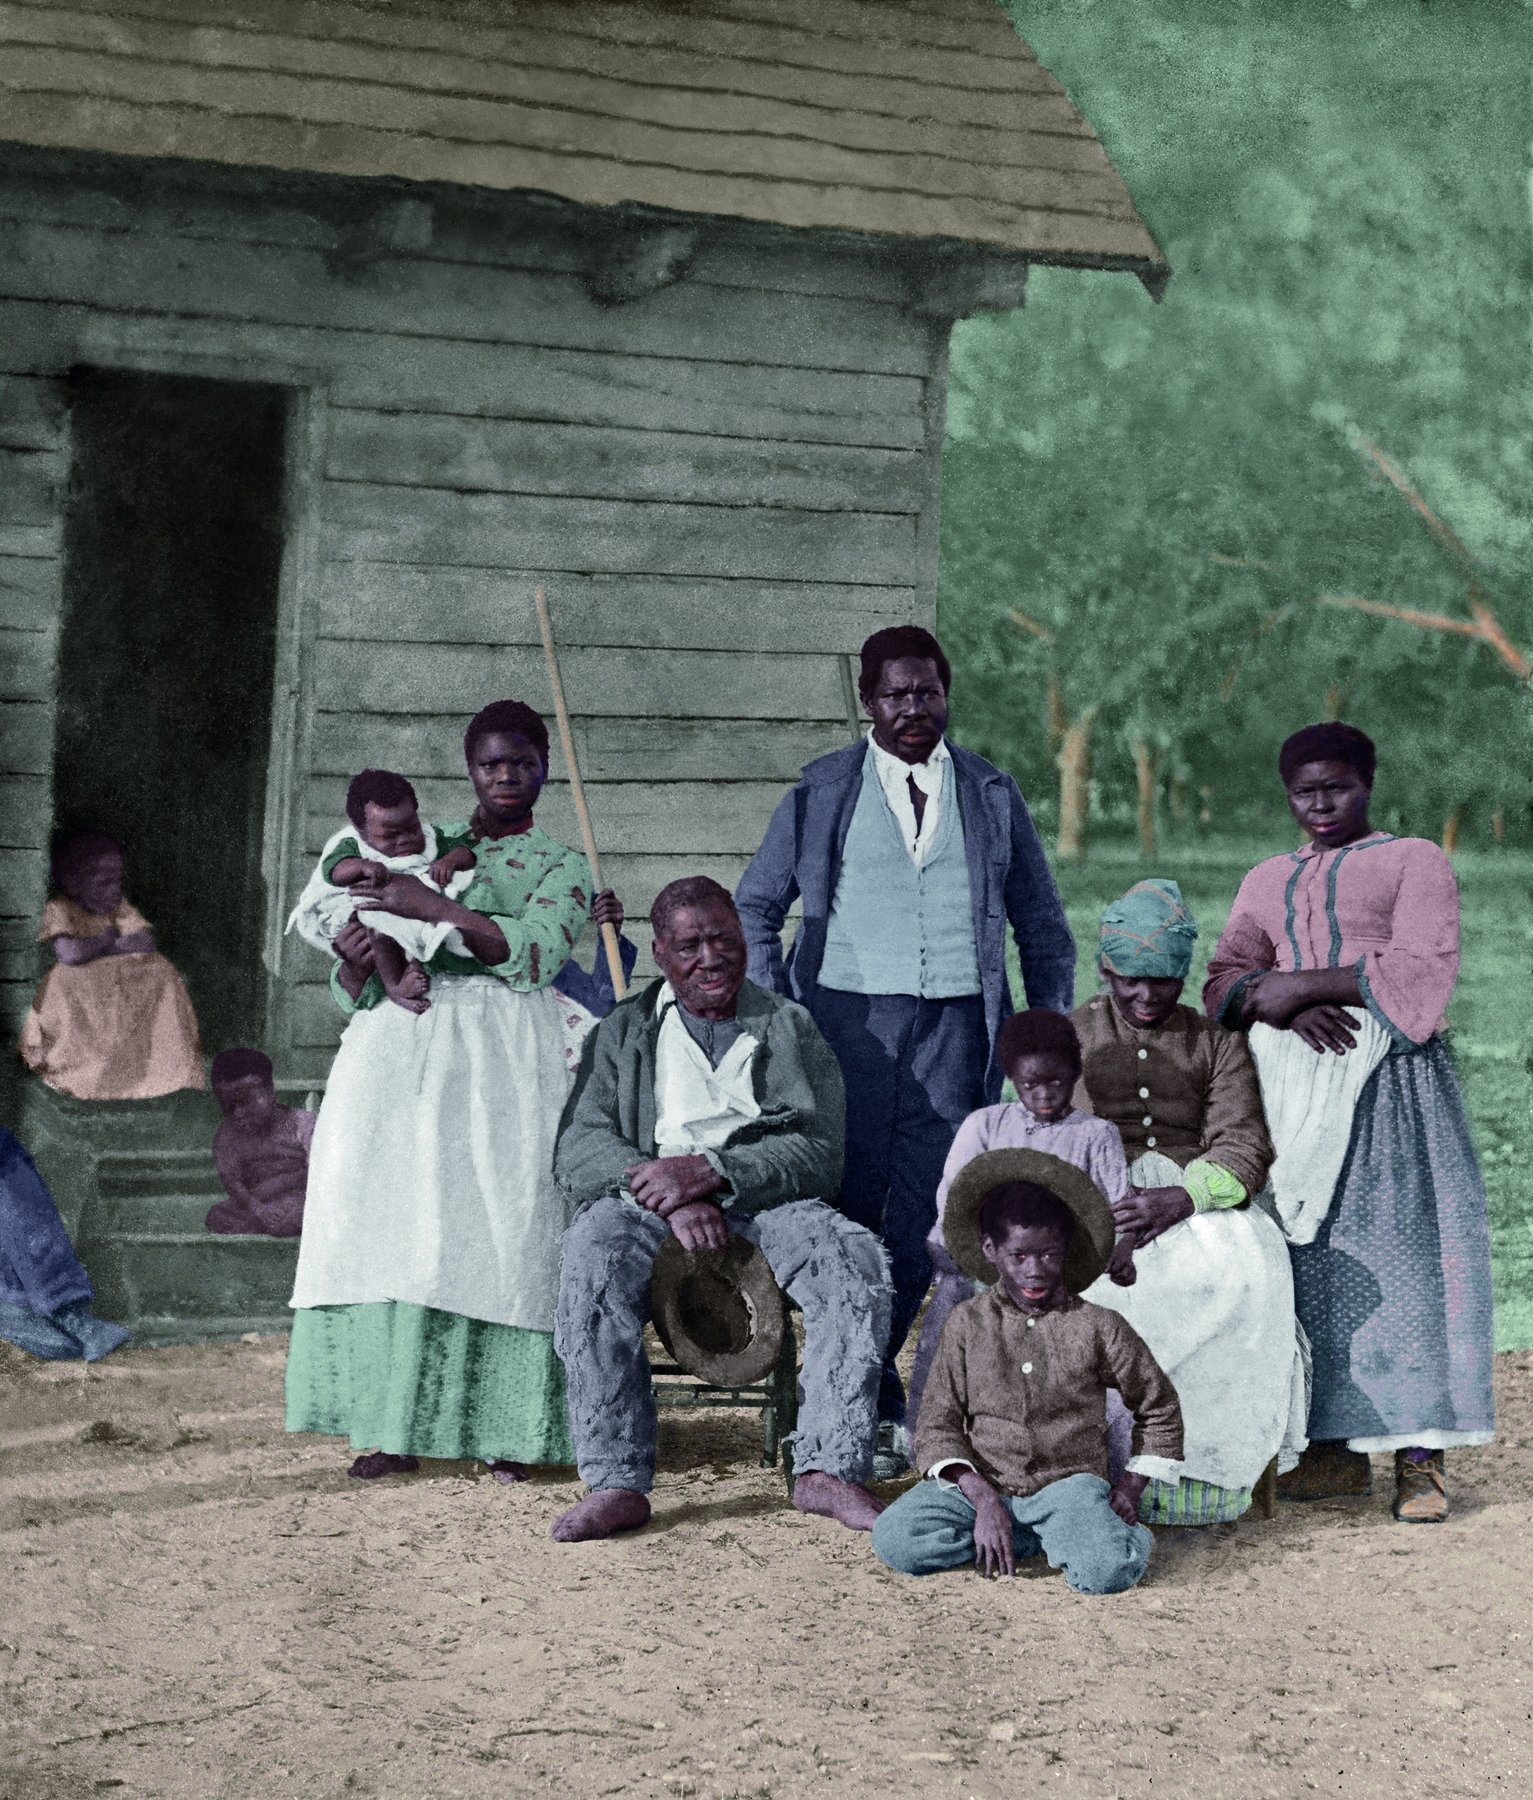 Fotografia. Um grupo de pessoas lado a lado, entre crianças, bebês, homens e mulheres, alguns em pé, alguns sentados, sobre um solo terroso. Ao fundo, uma casa de madeira.